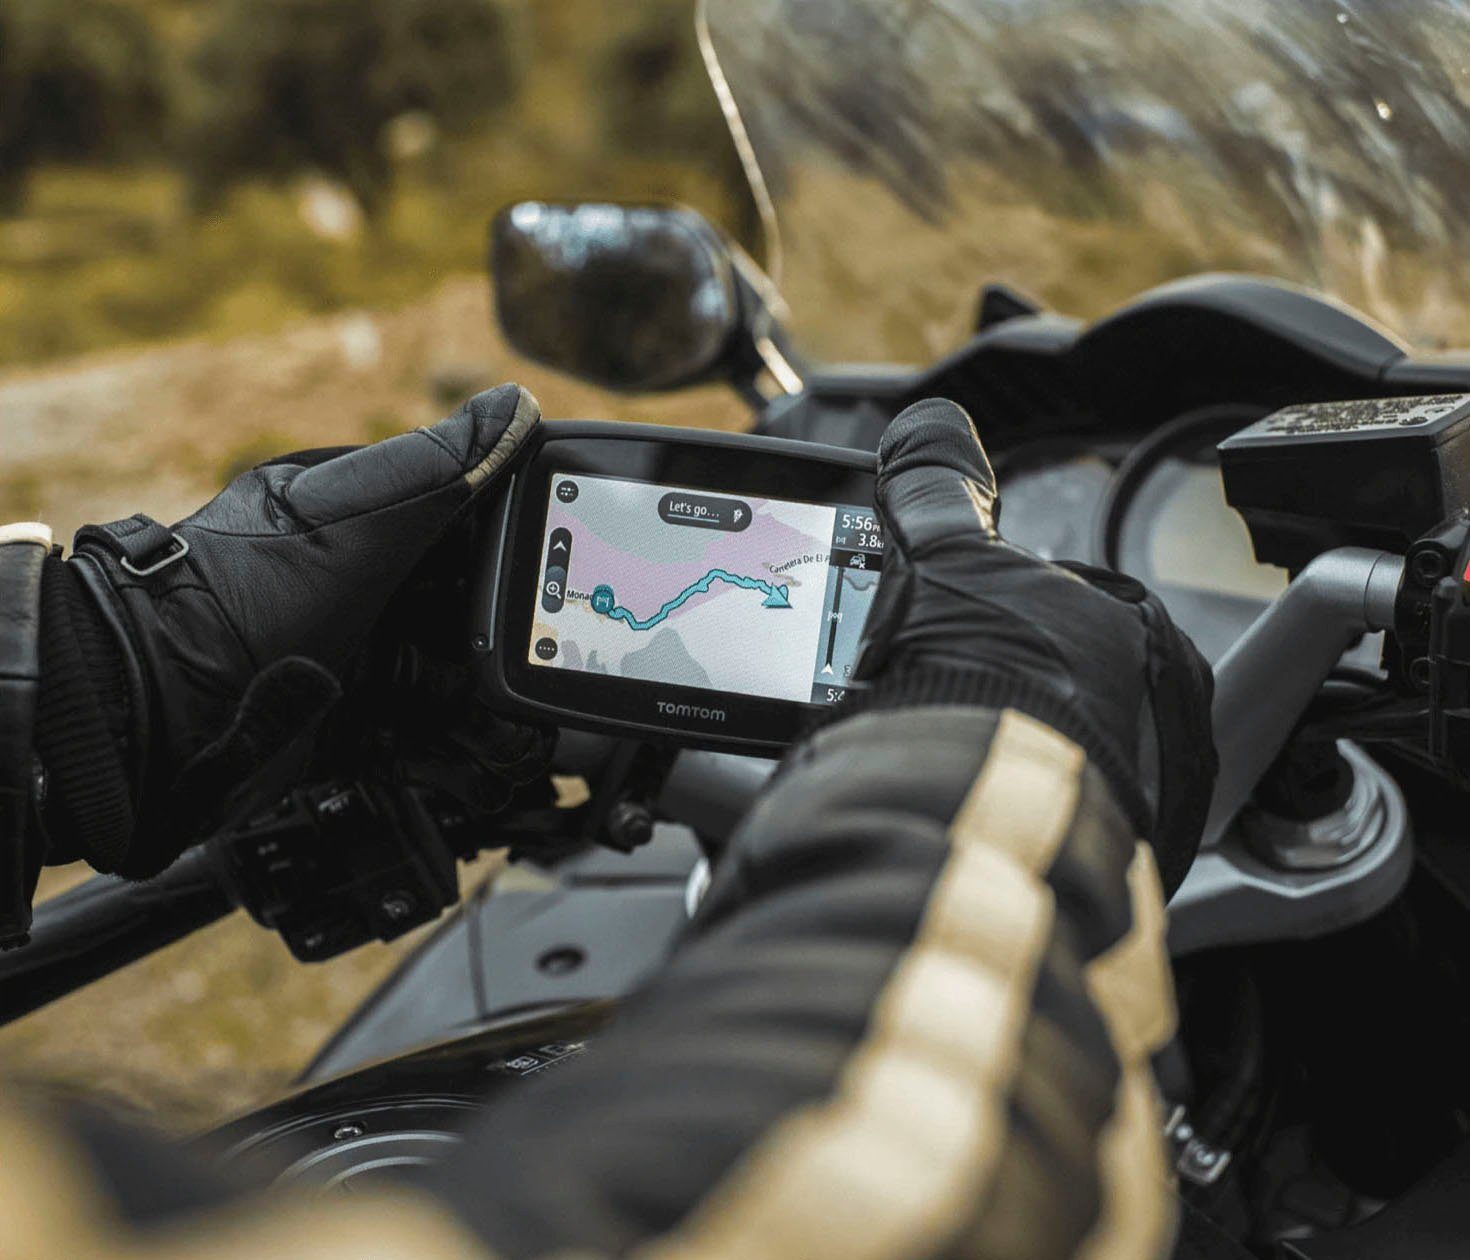 Motorrad-Navigationsgerät TomTom 500 Rider